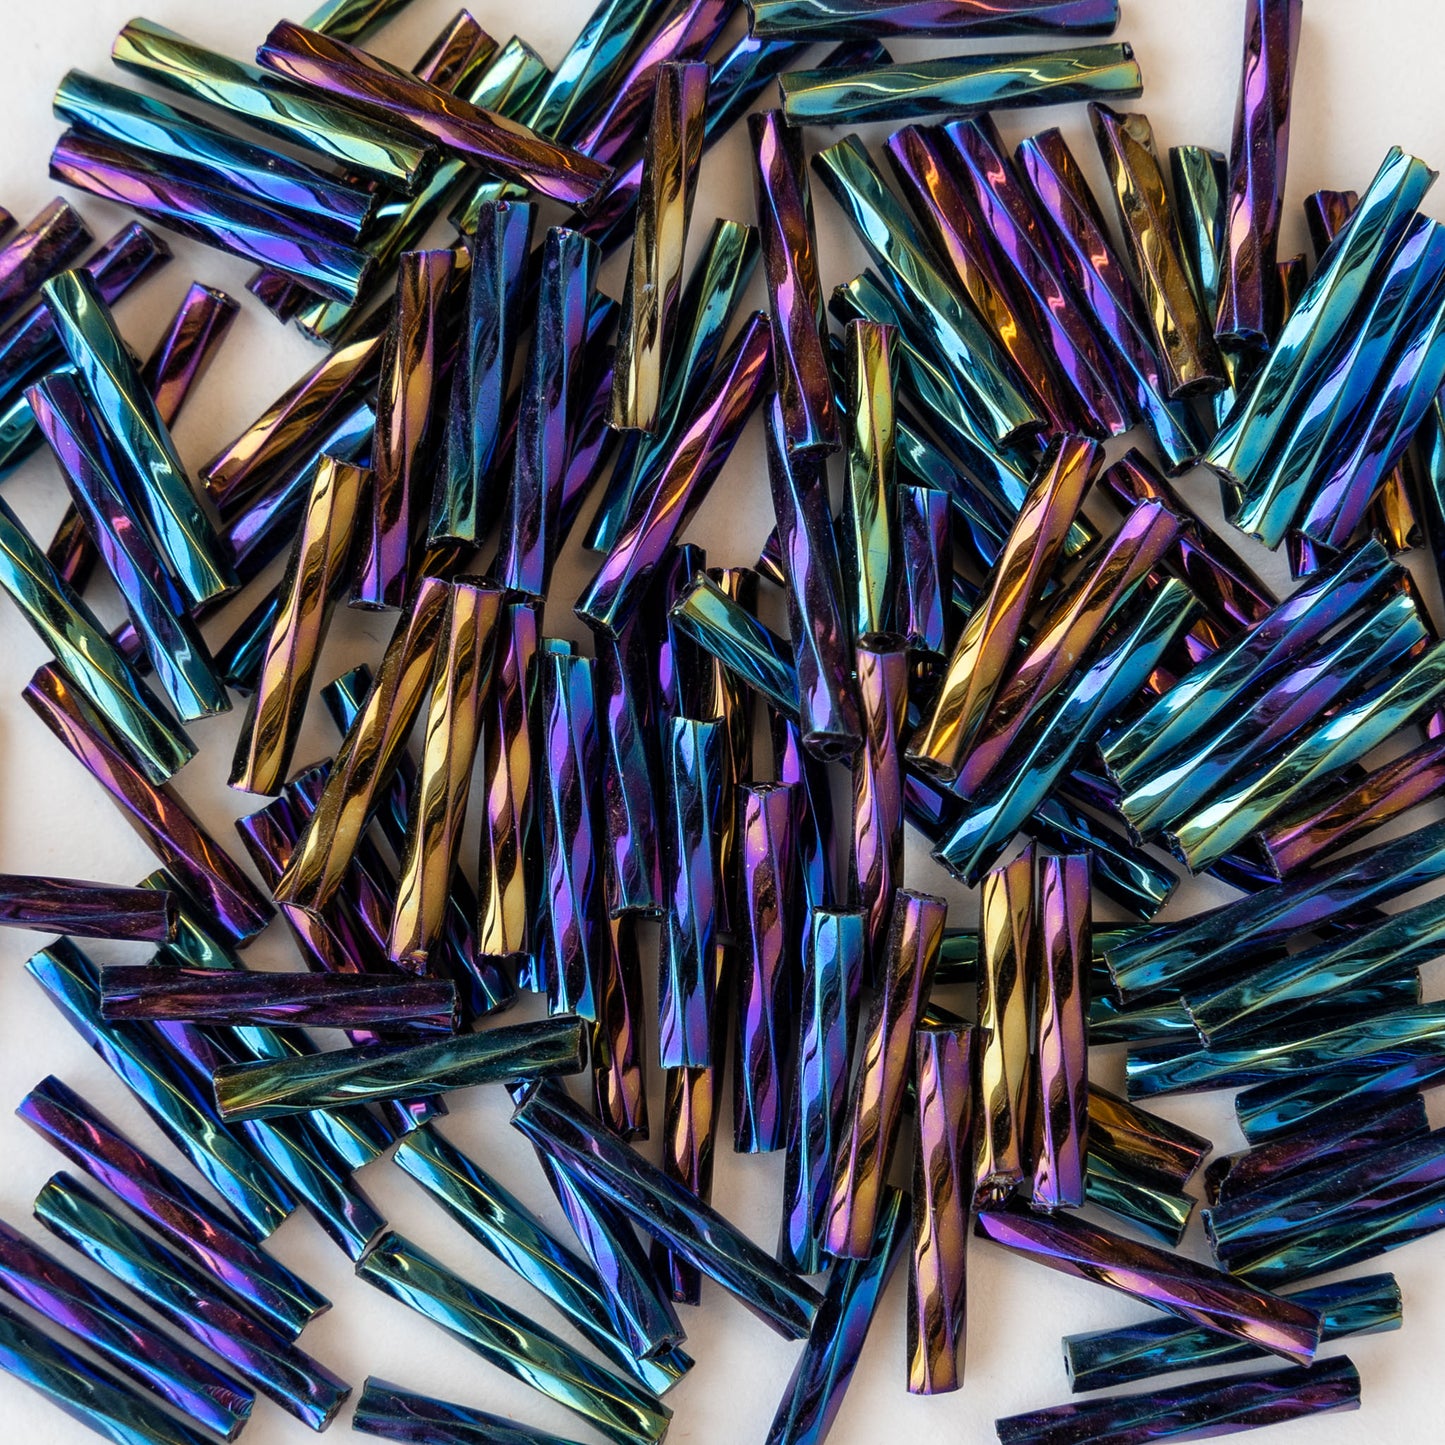 15mm Twisted Bugle Beads - Blue Iris - 200 Beads